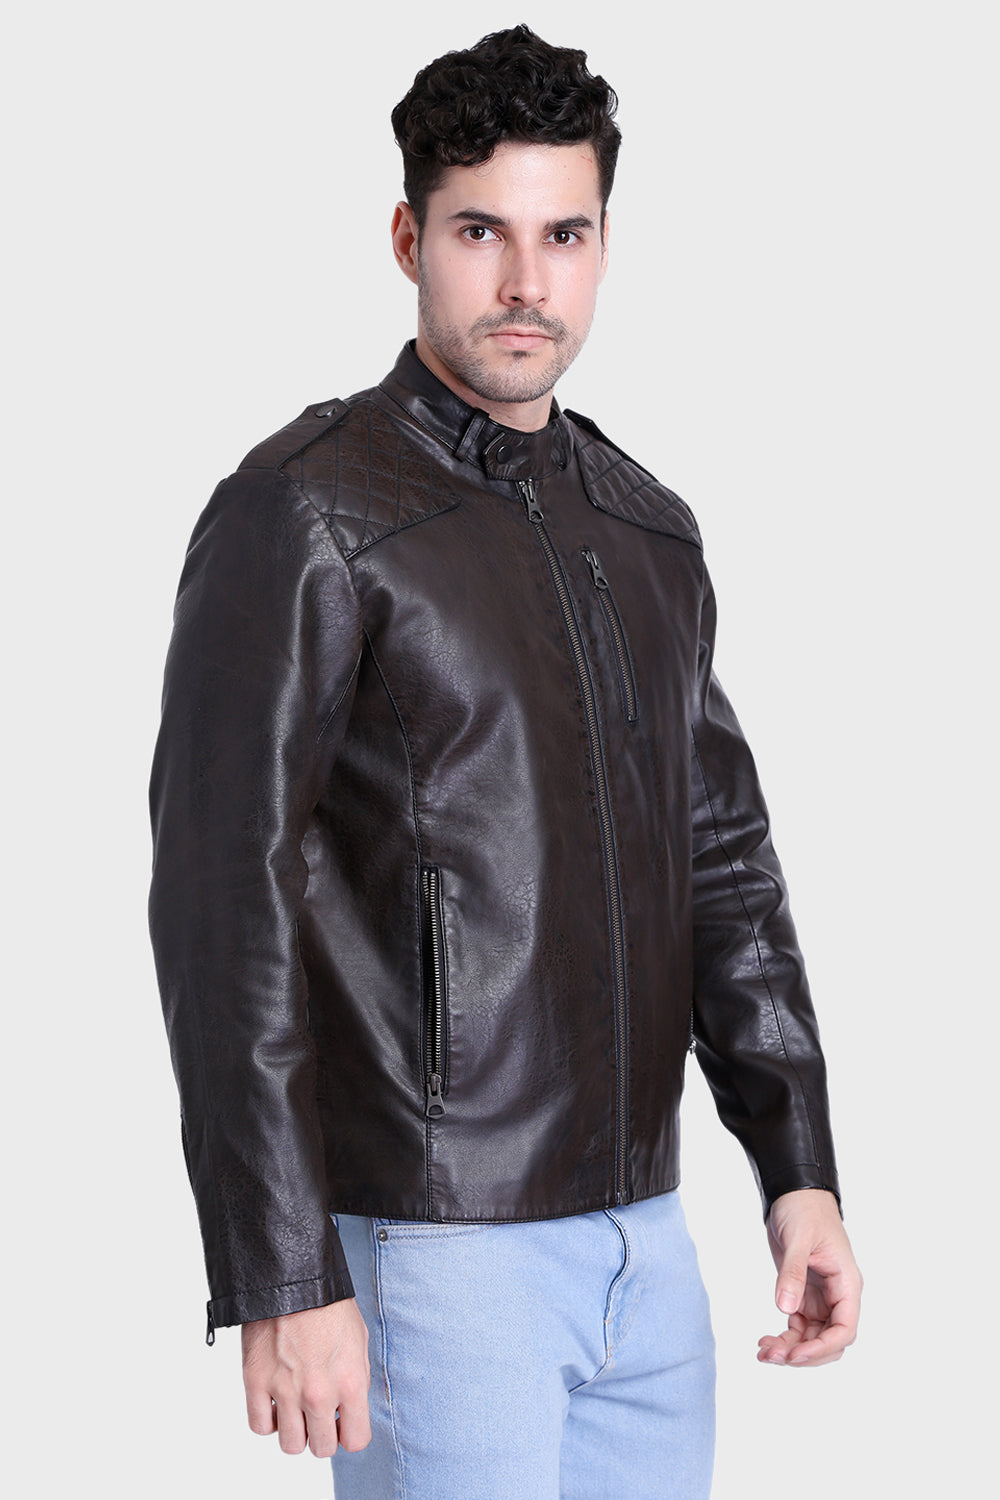 Justanned Brunette Leather Jacket